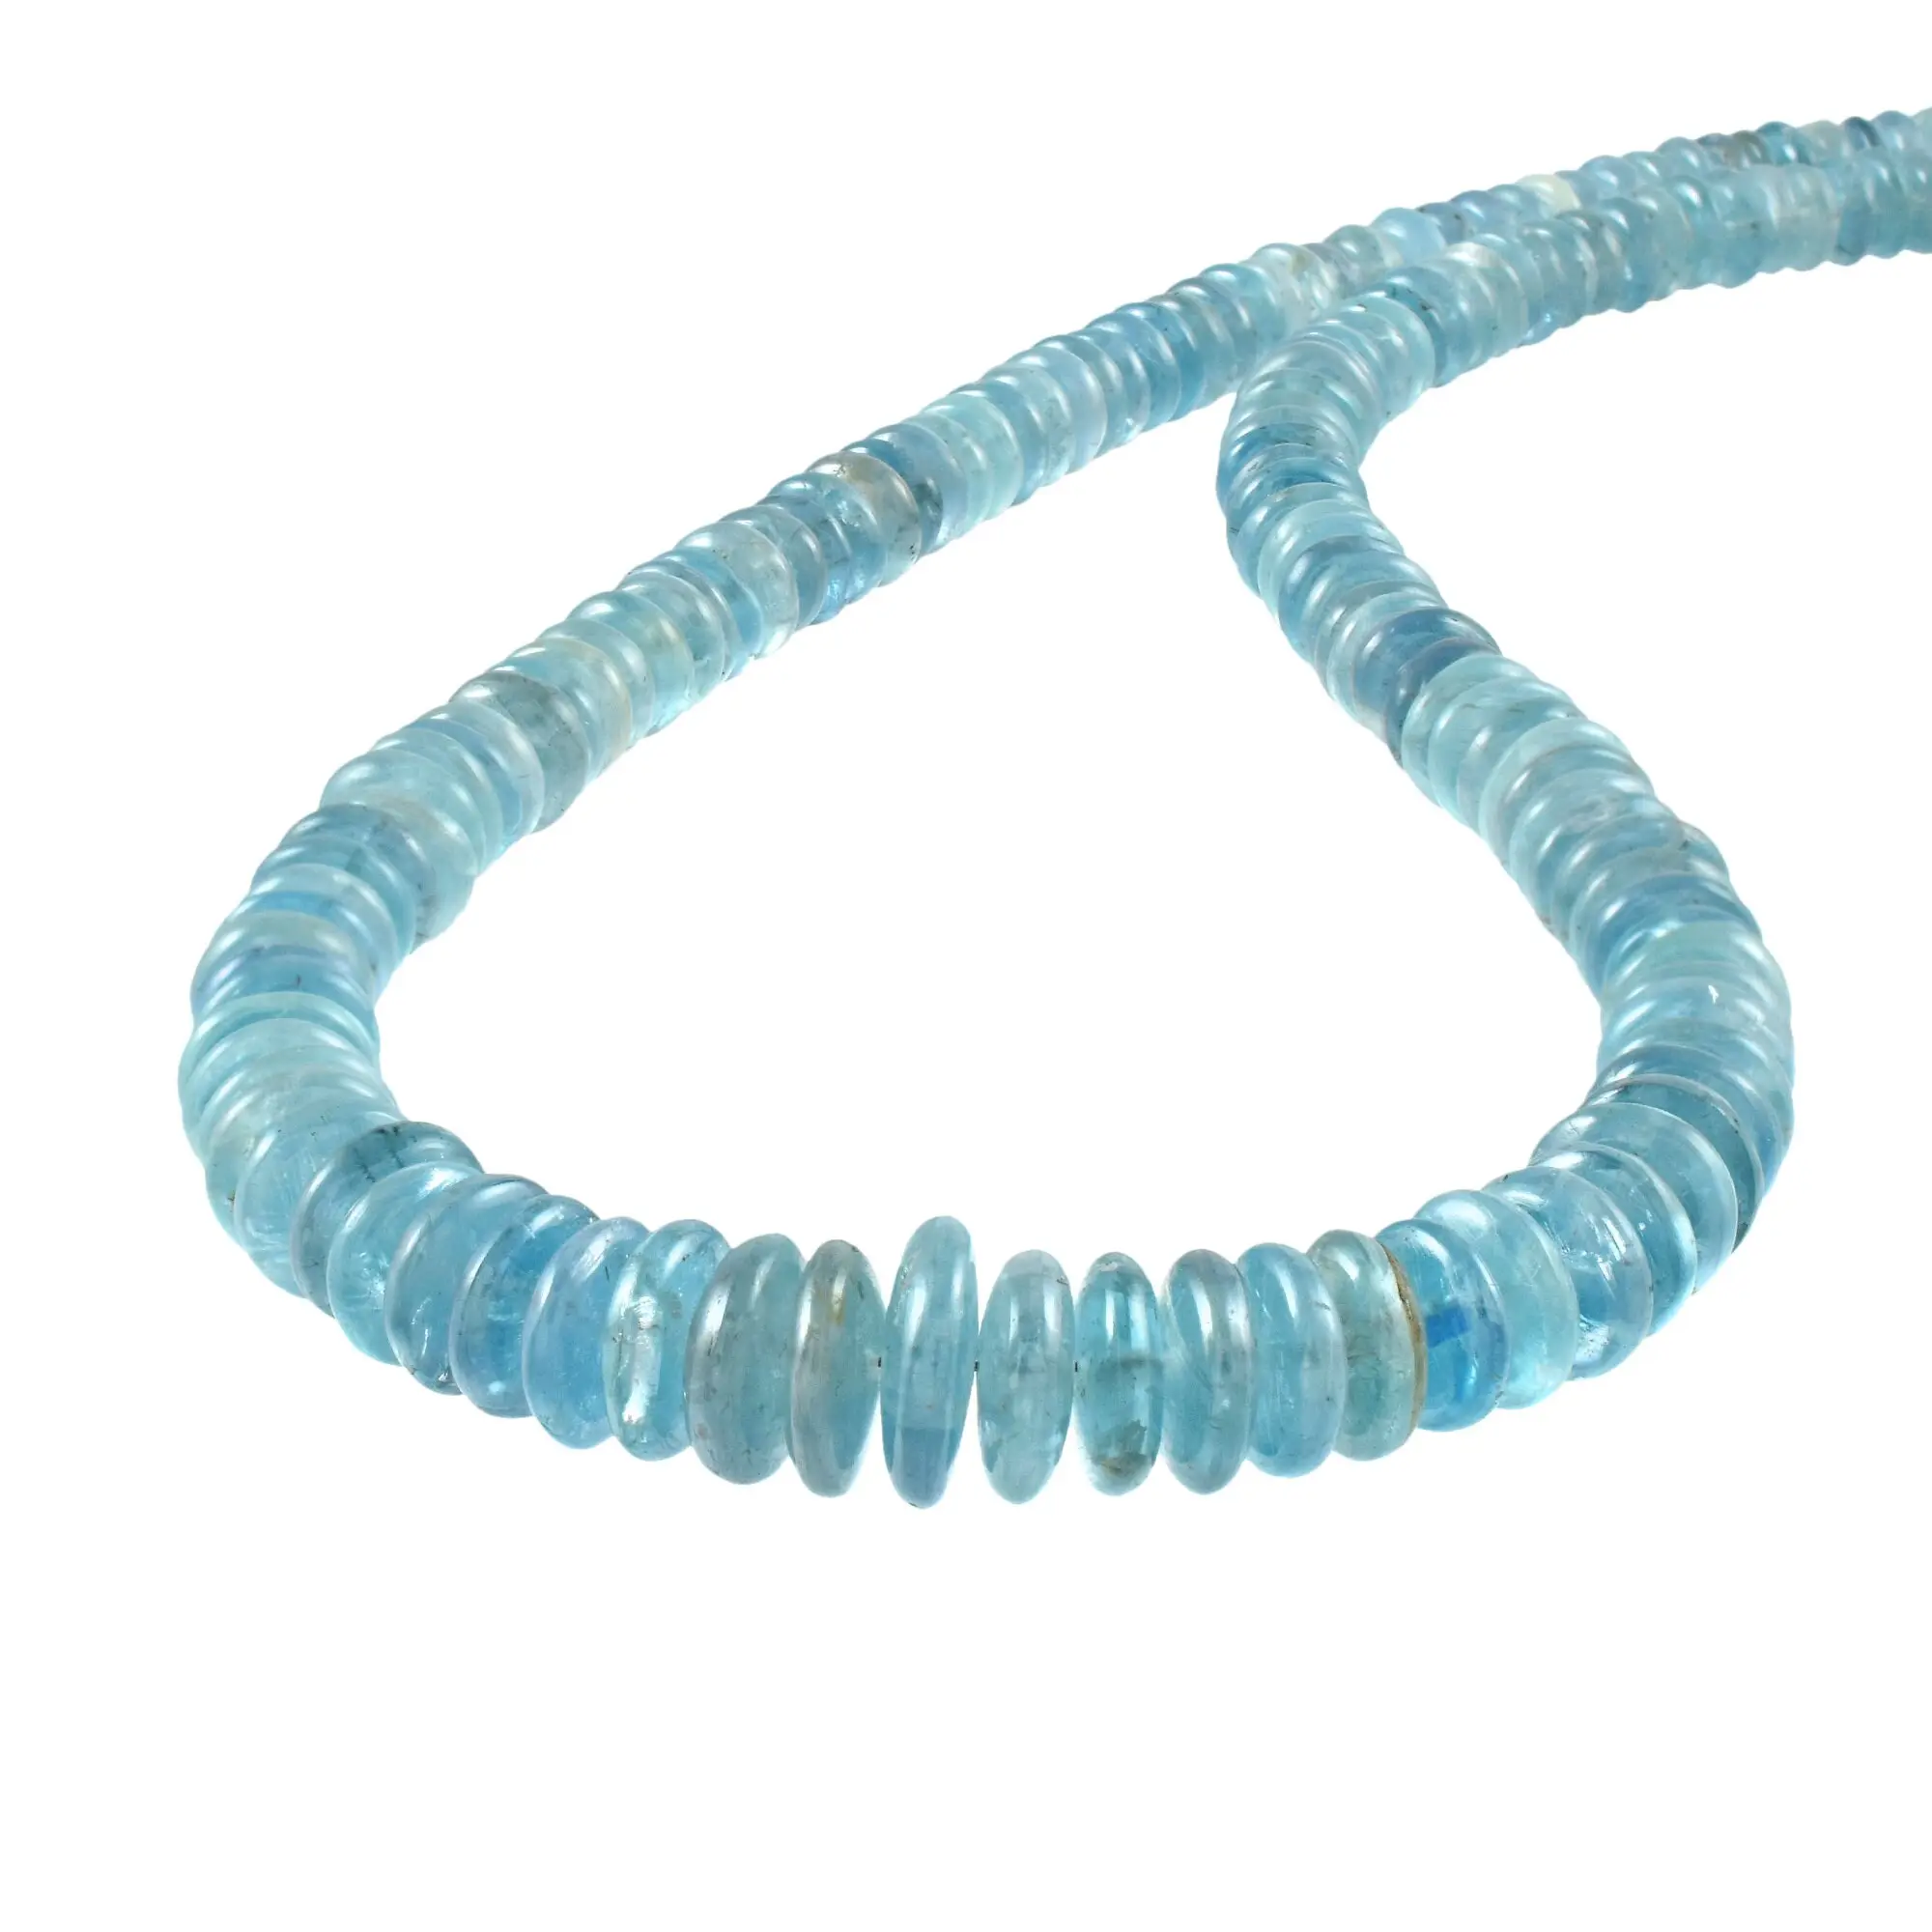 Kyanite naturelle lisse perles rondes couleur bleu clair perles de pierres précieuses bijoux perles femmes cadeau avec chaîne plaque d'or pour elle